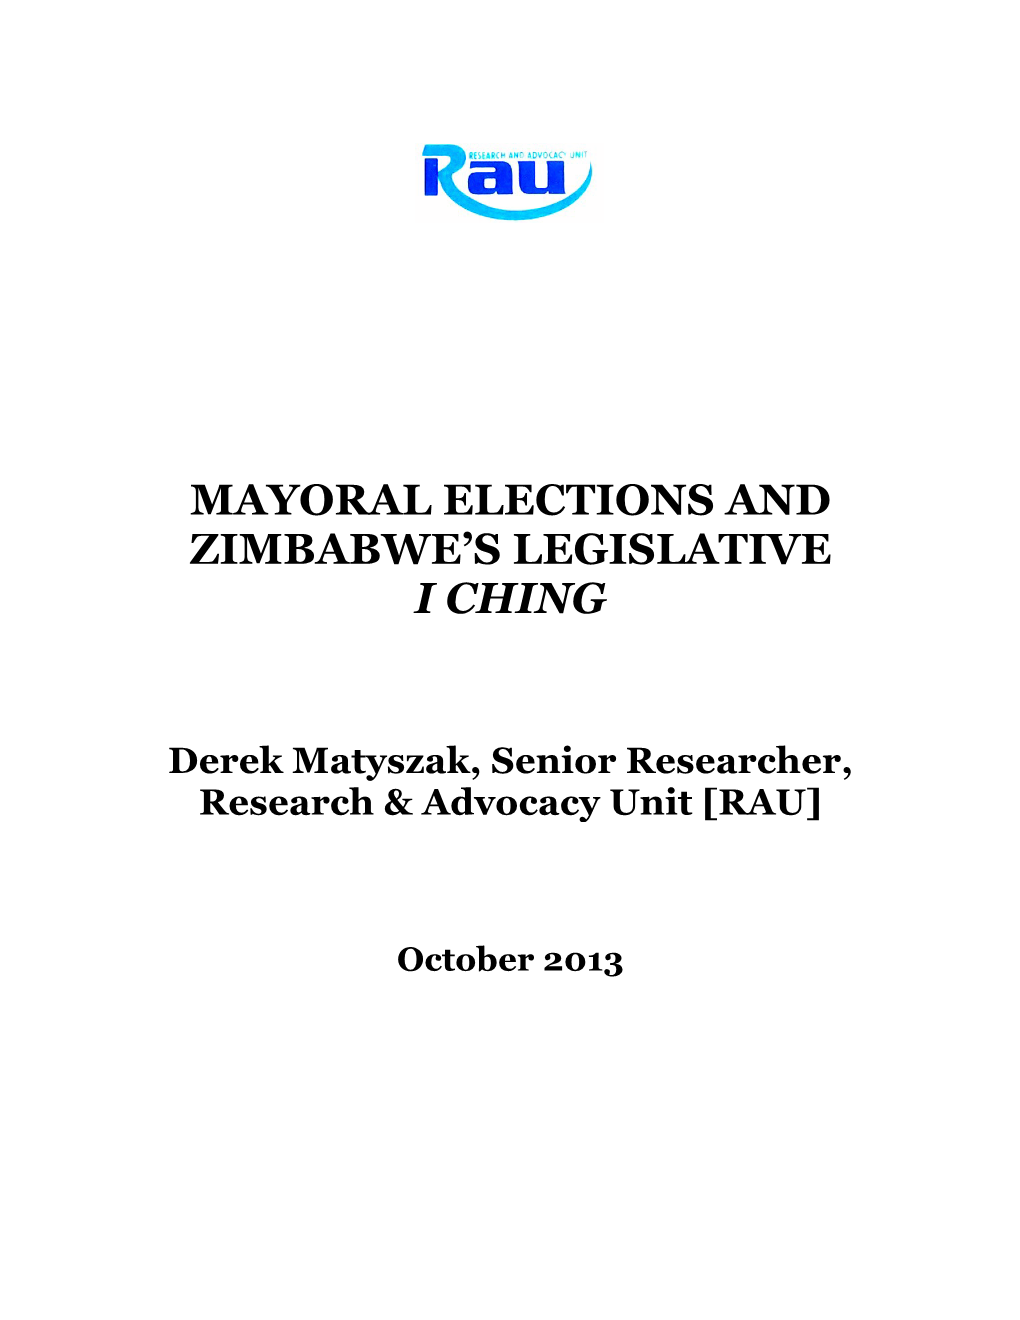 Mayoral Elections and Zimbabwe's Legislative I Ching